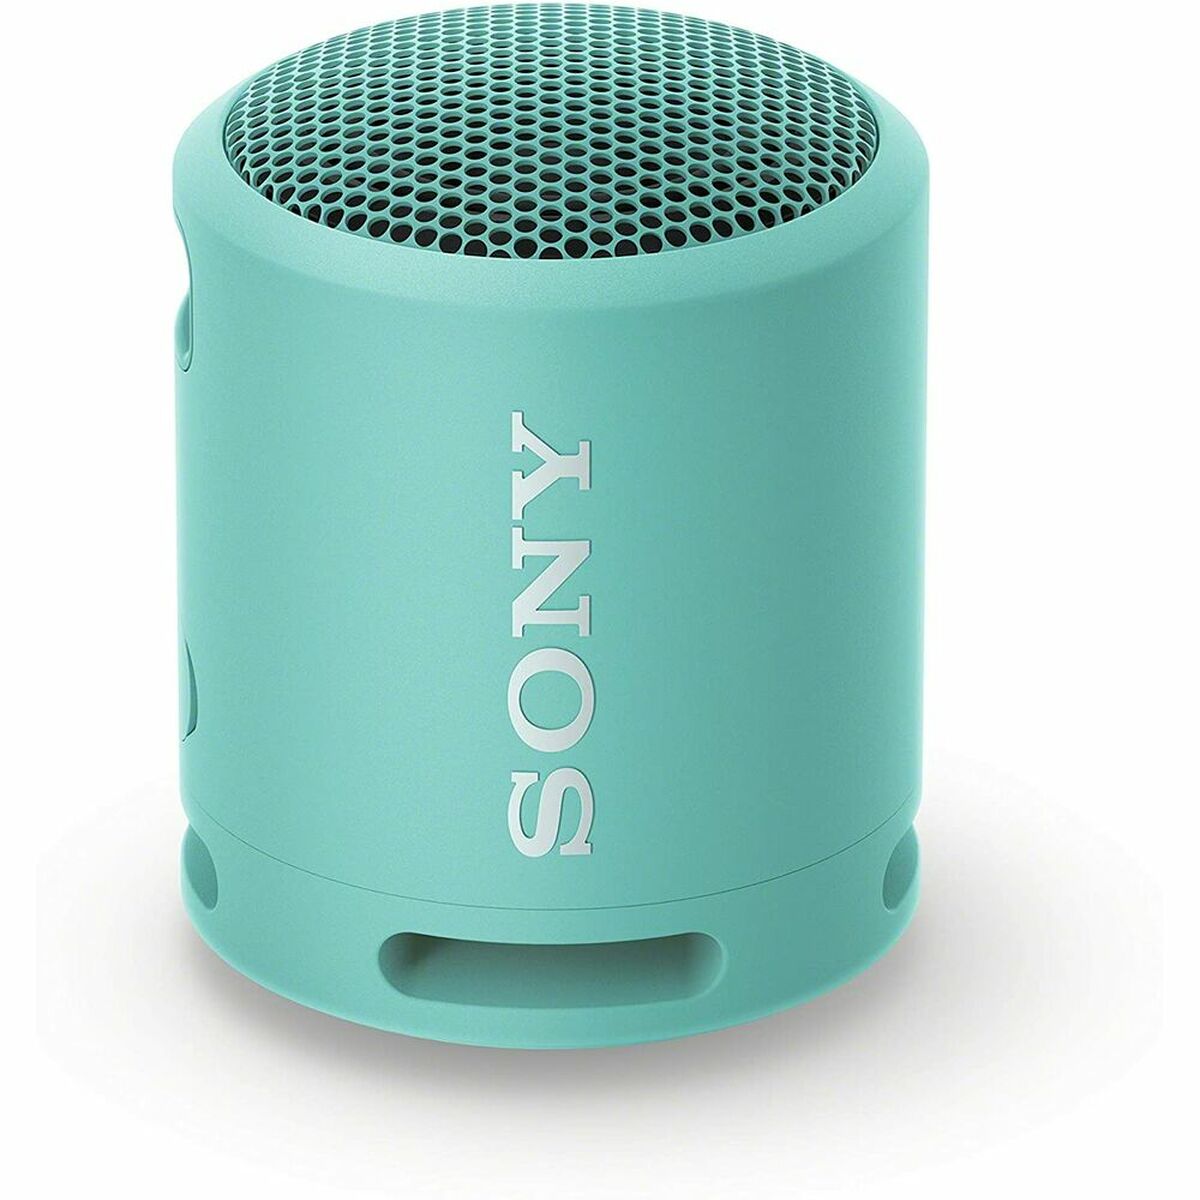 Tragbare Bluetooth-Lautsprecher Sony SRS-XB13 5W